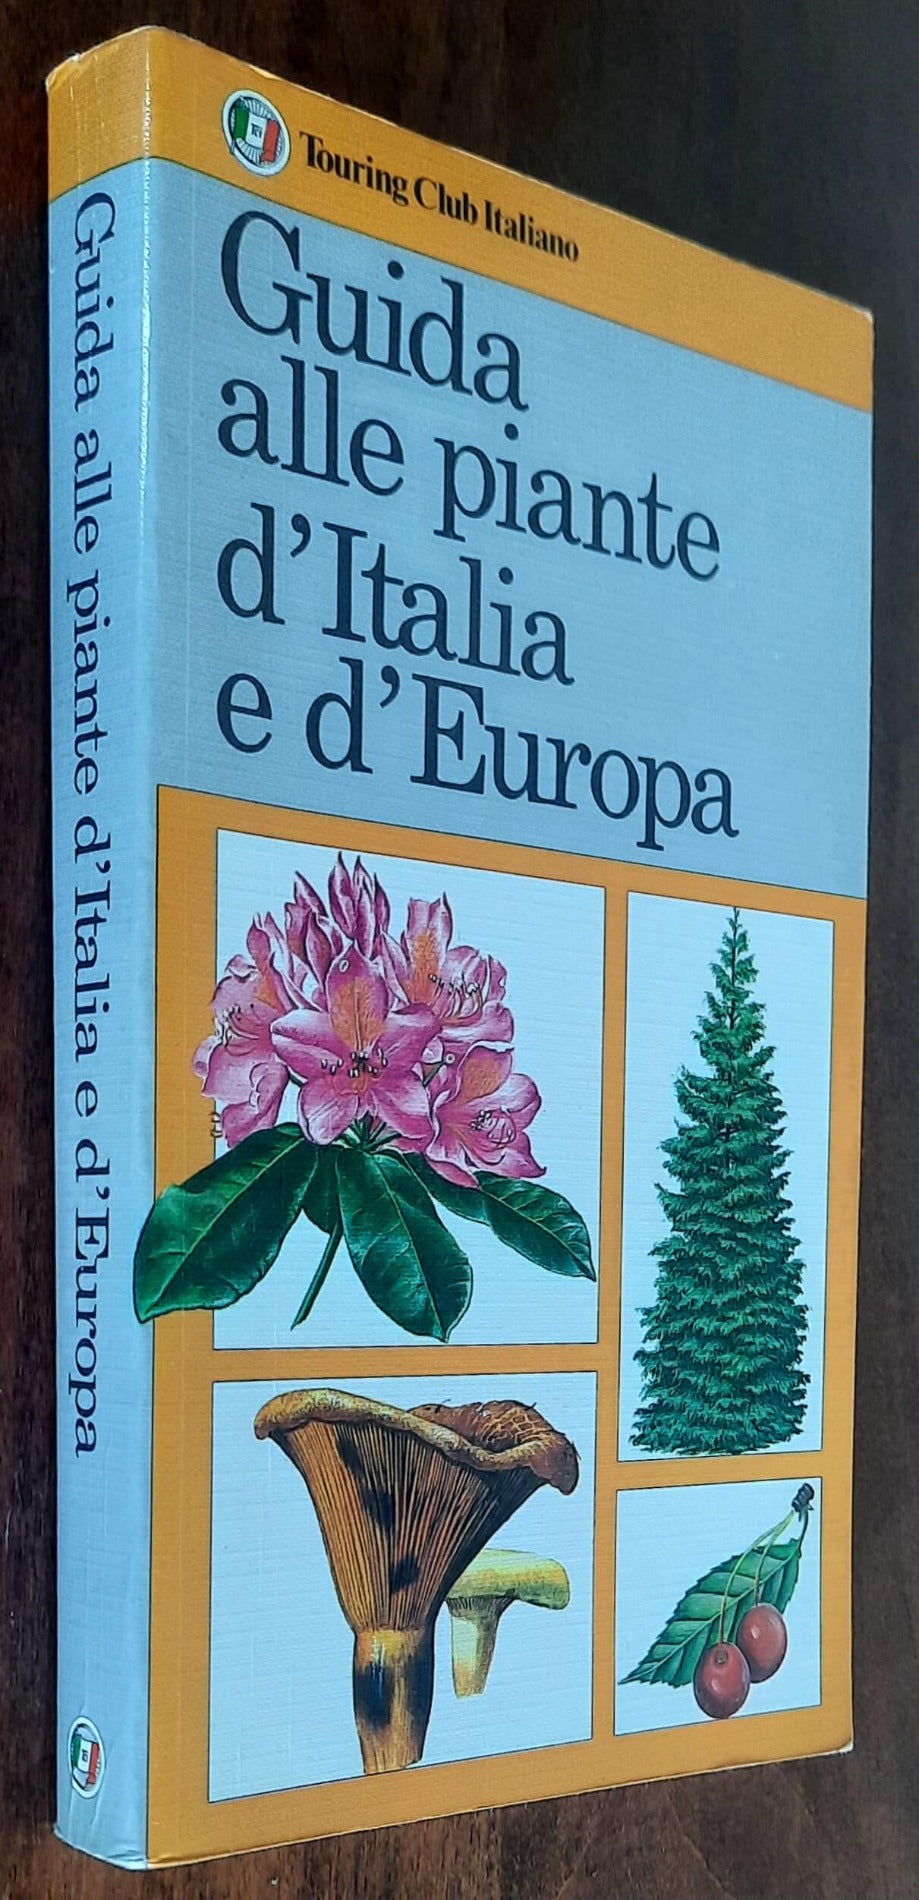 Guida alle piante d’Italia e d’Europa - Touring Club